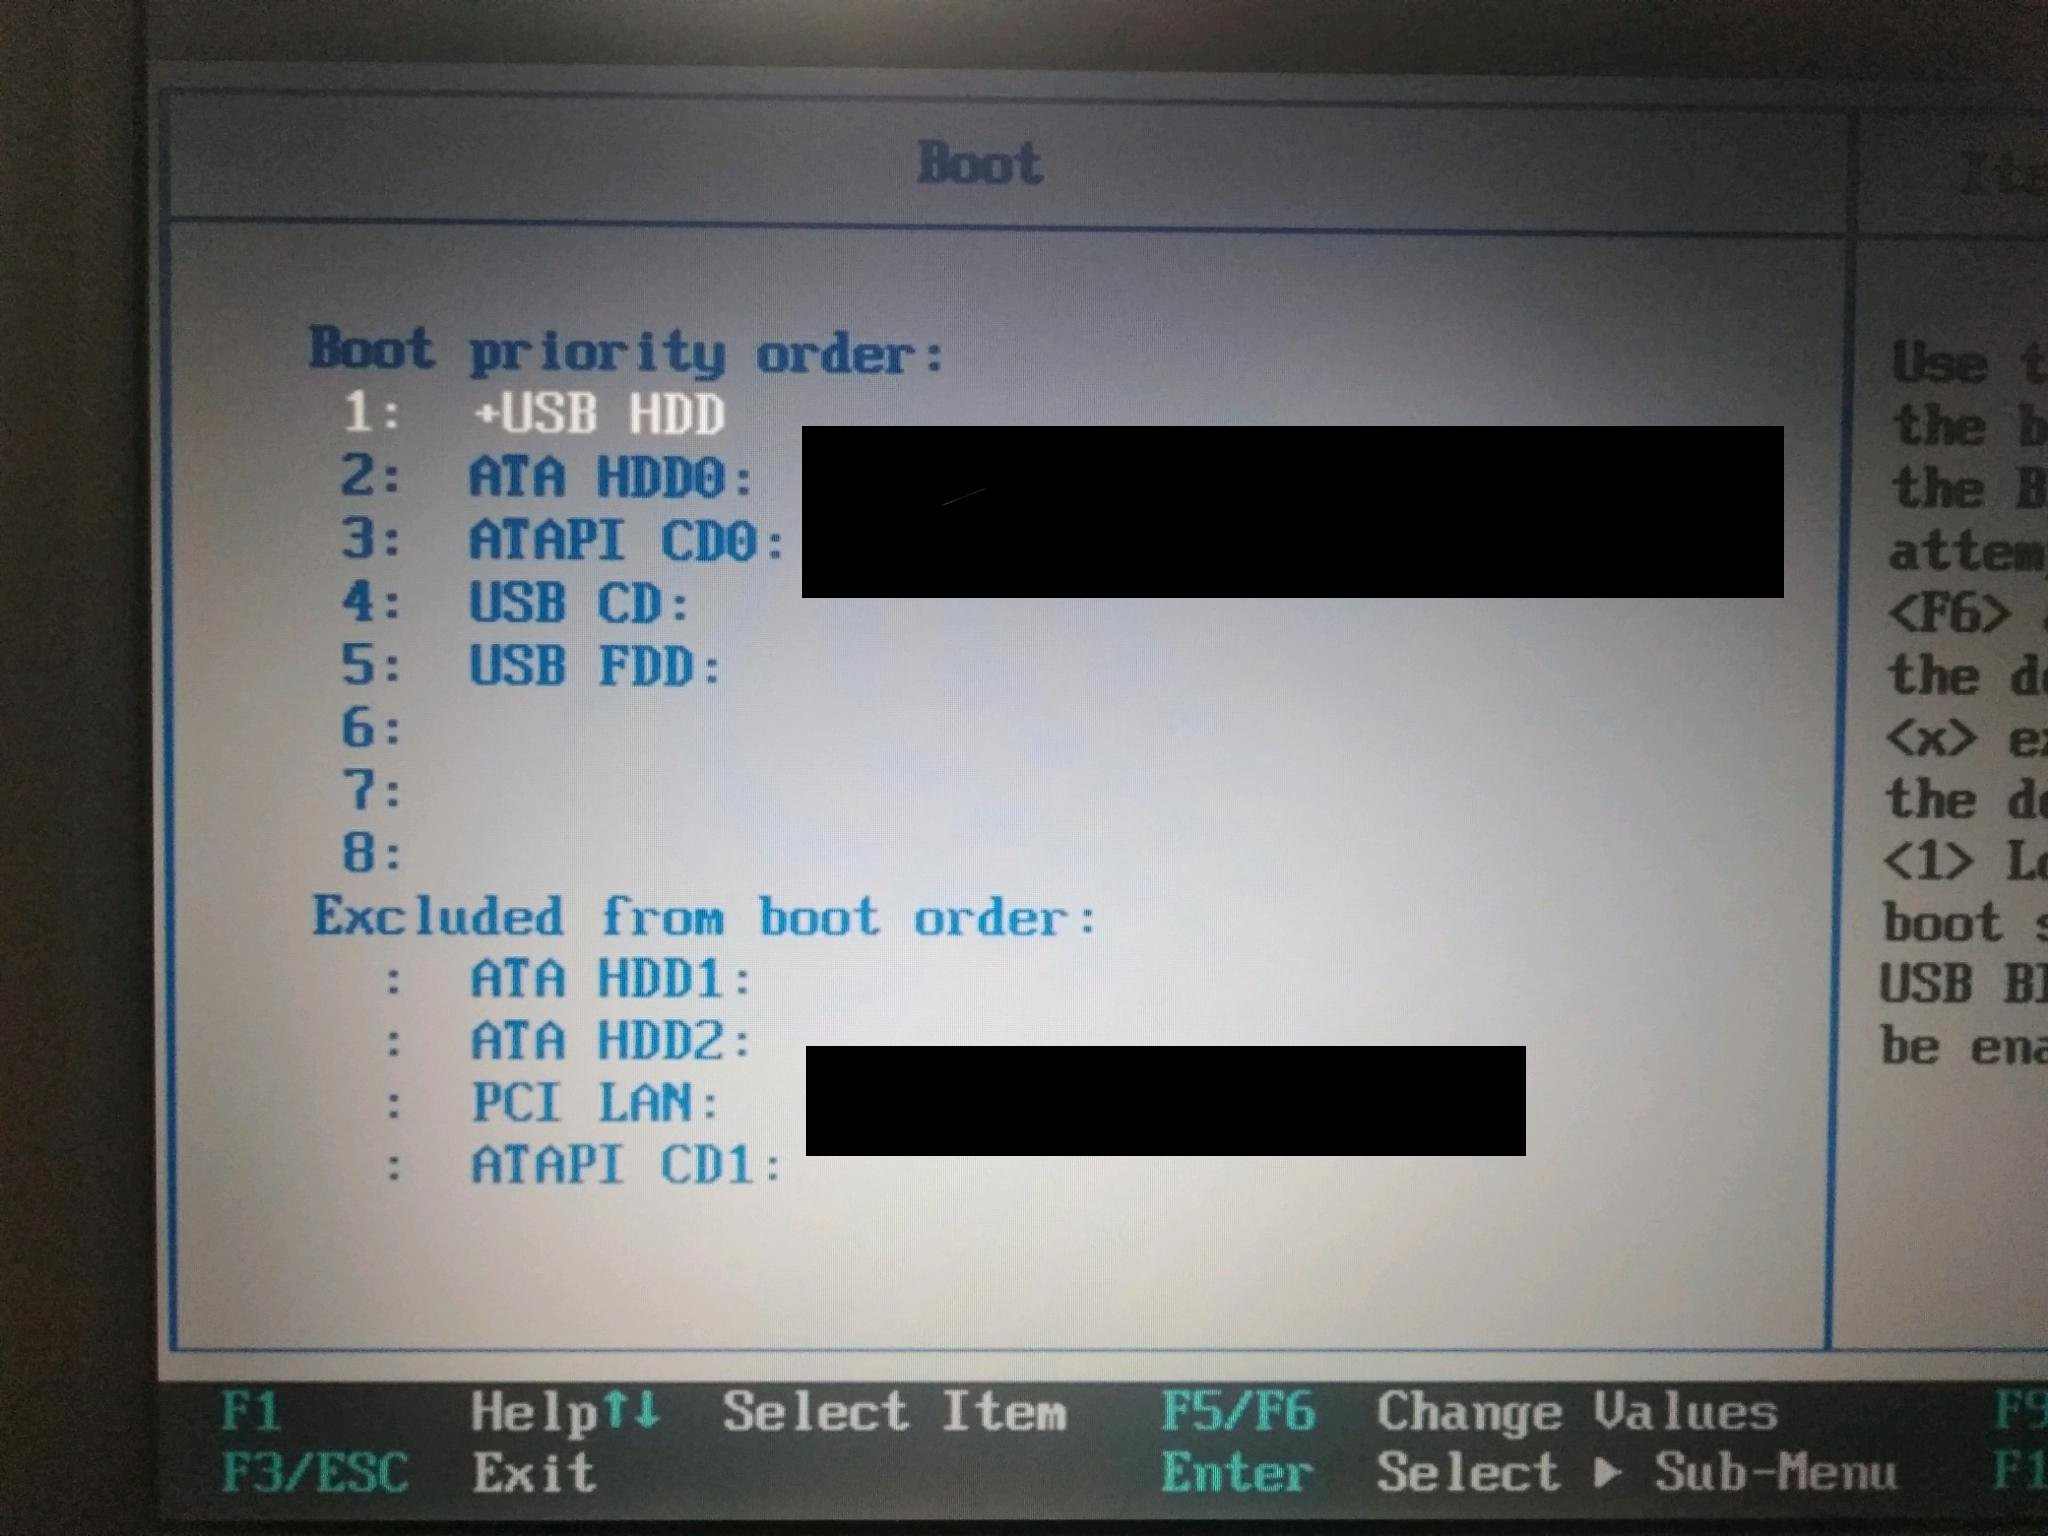 BIOS boot order